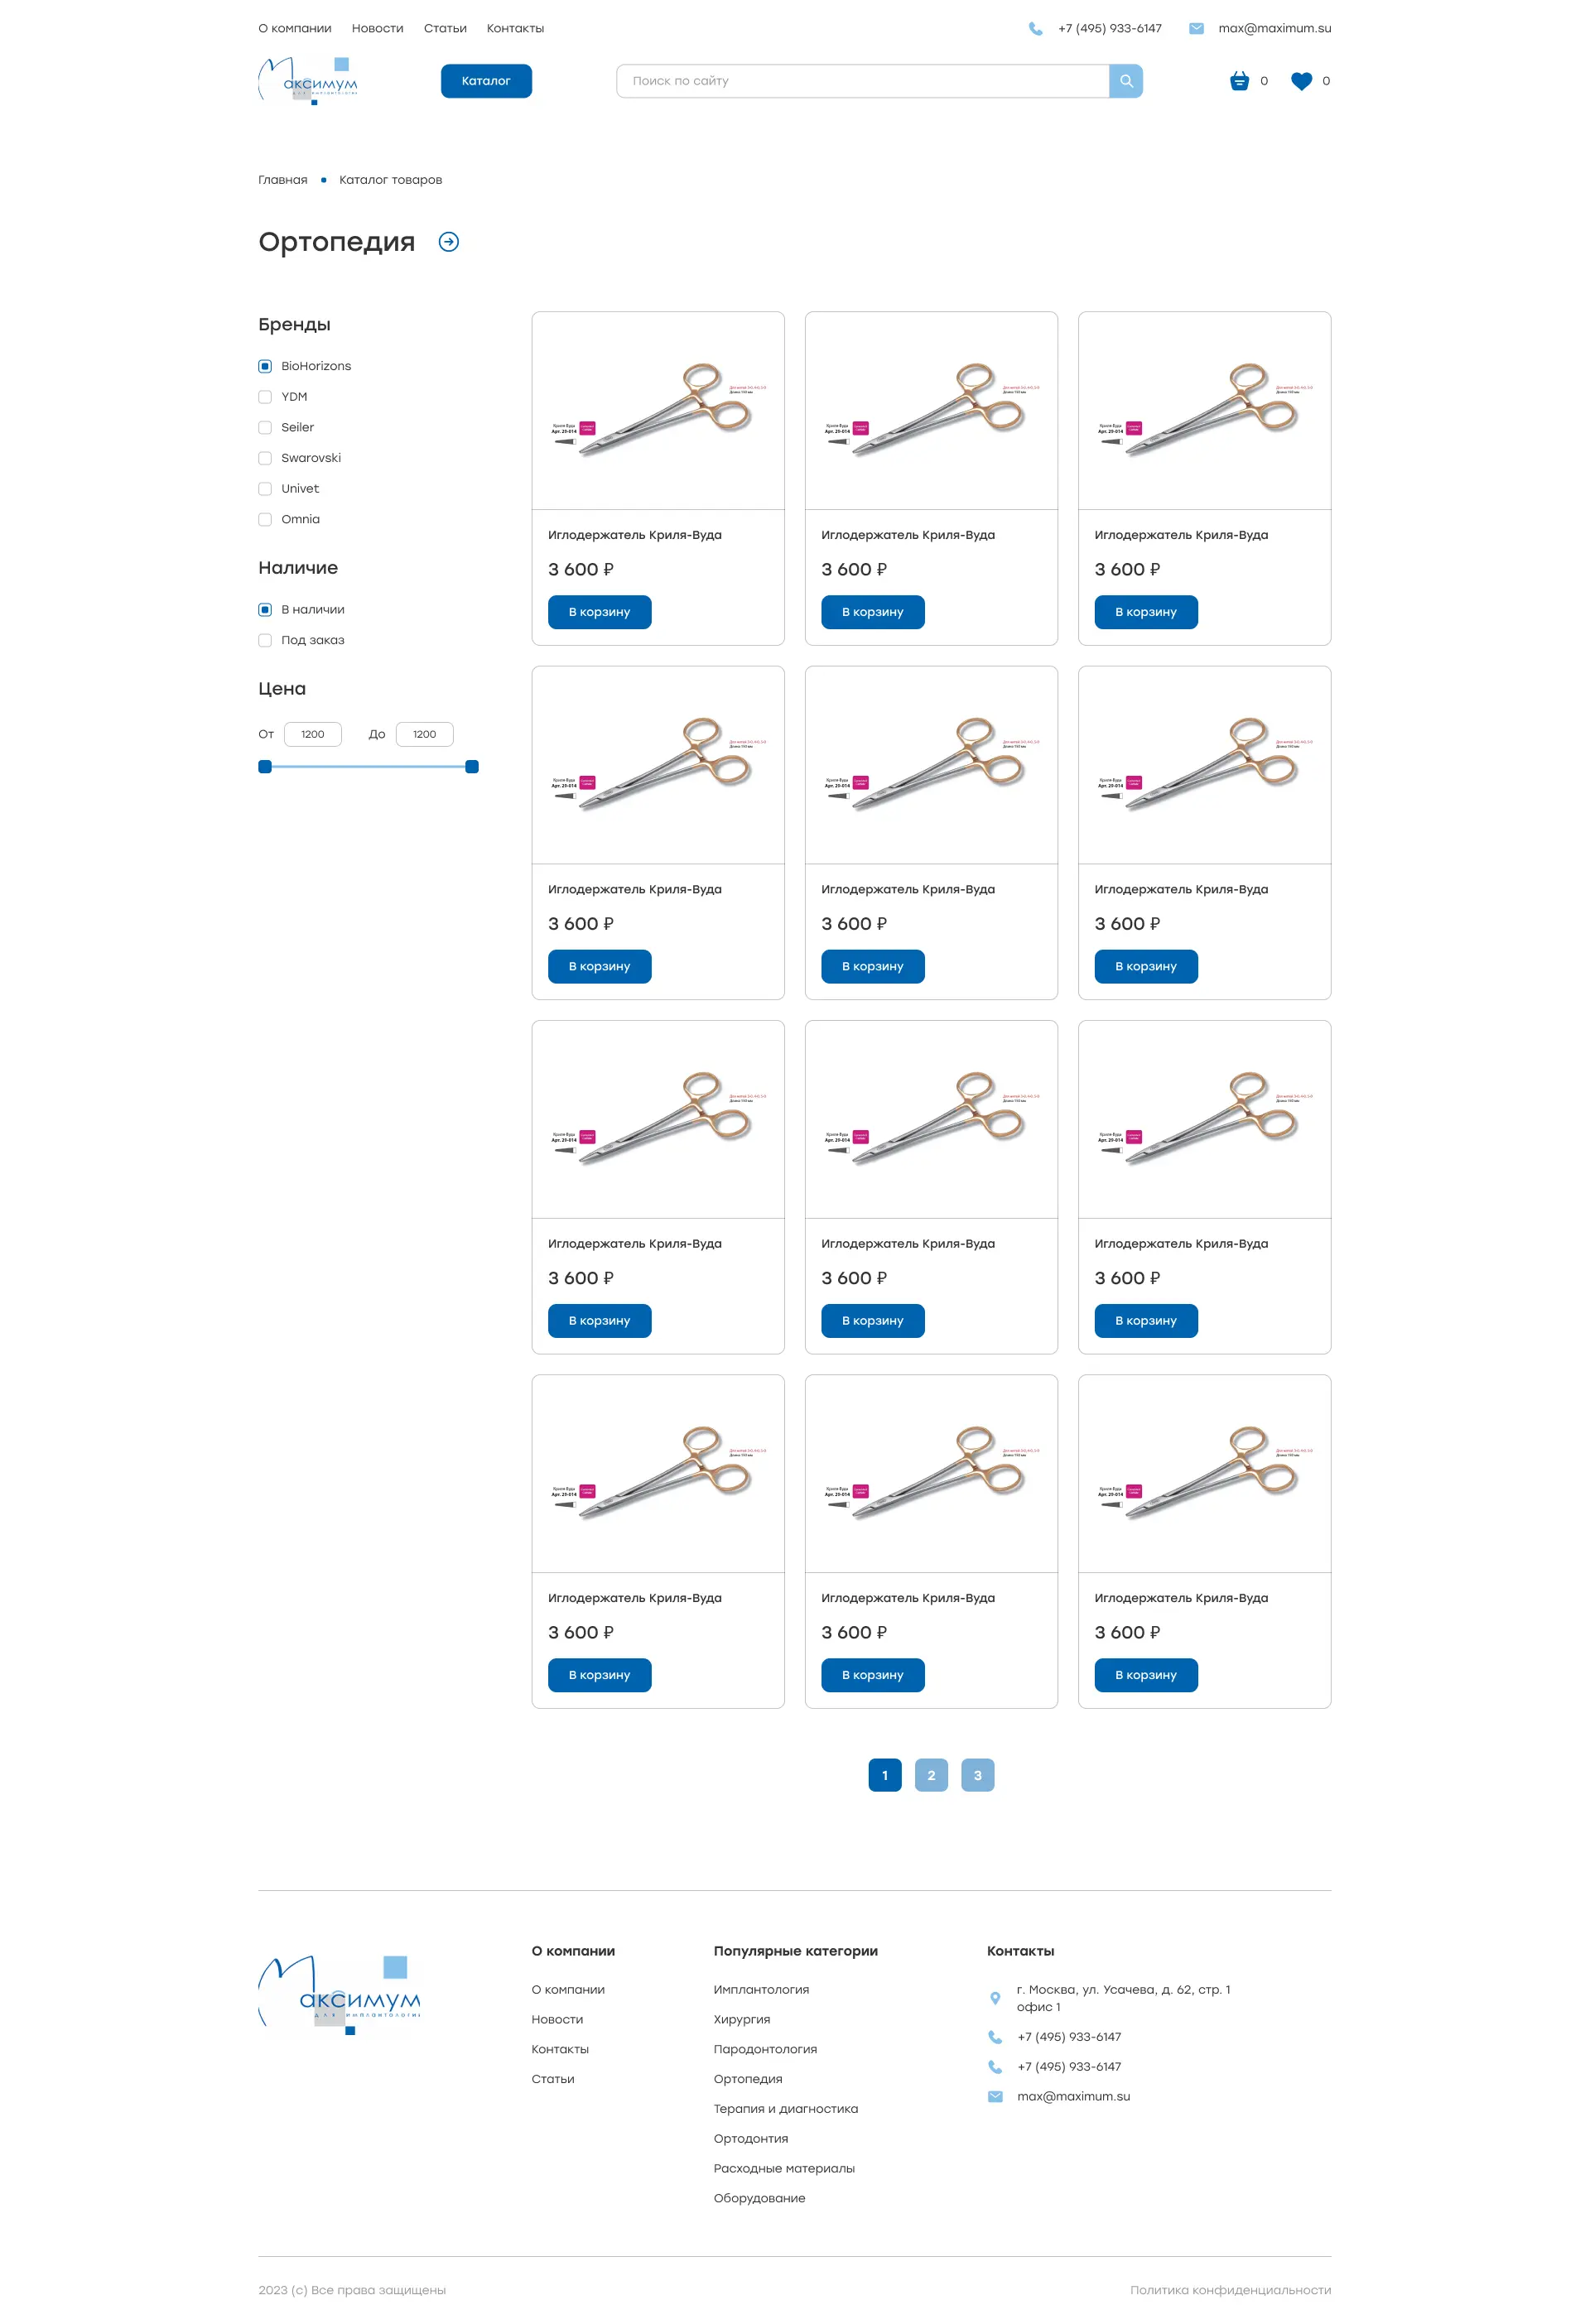 Figma шаблон, Figma templates, шаблона для сайта магазин медицинского оборудования, страница категории